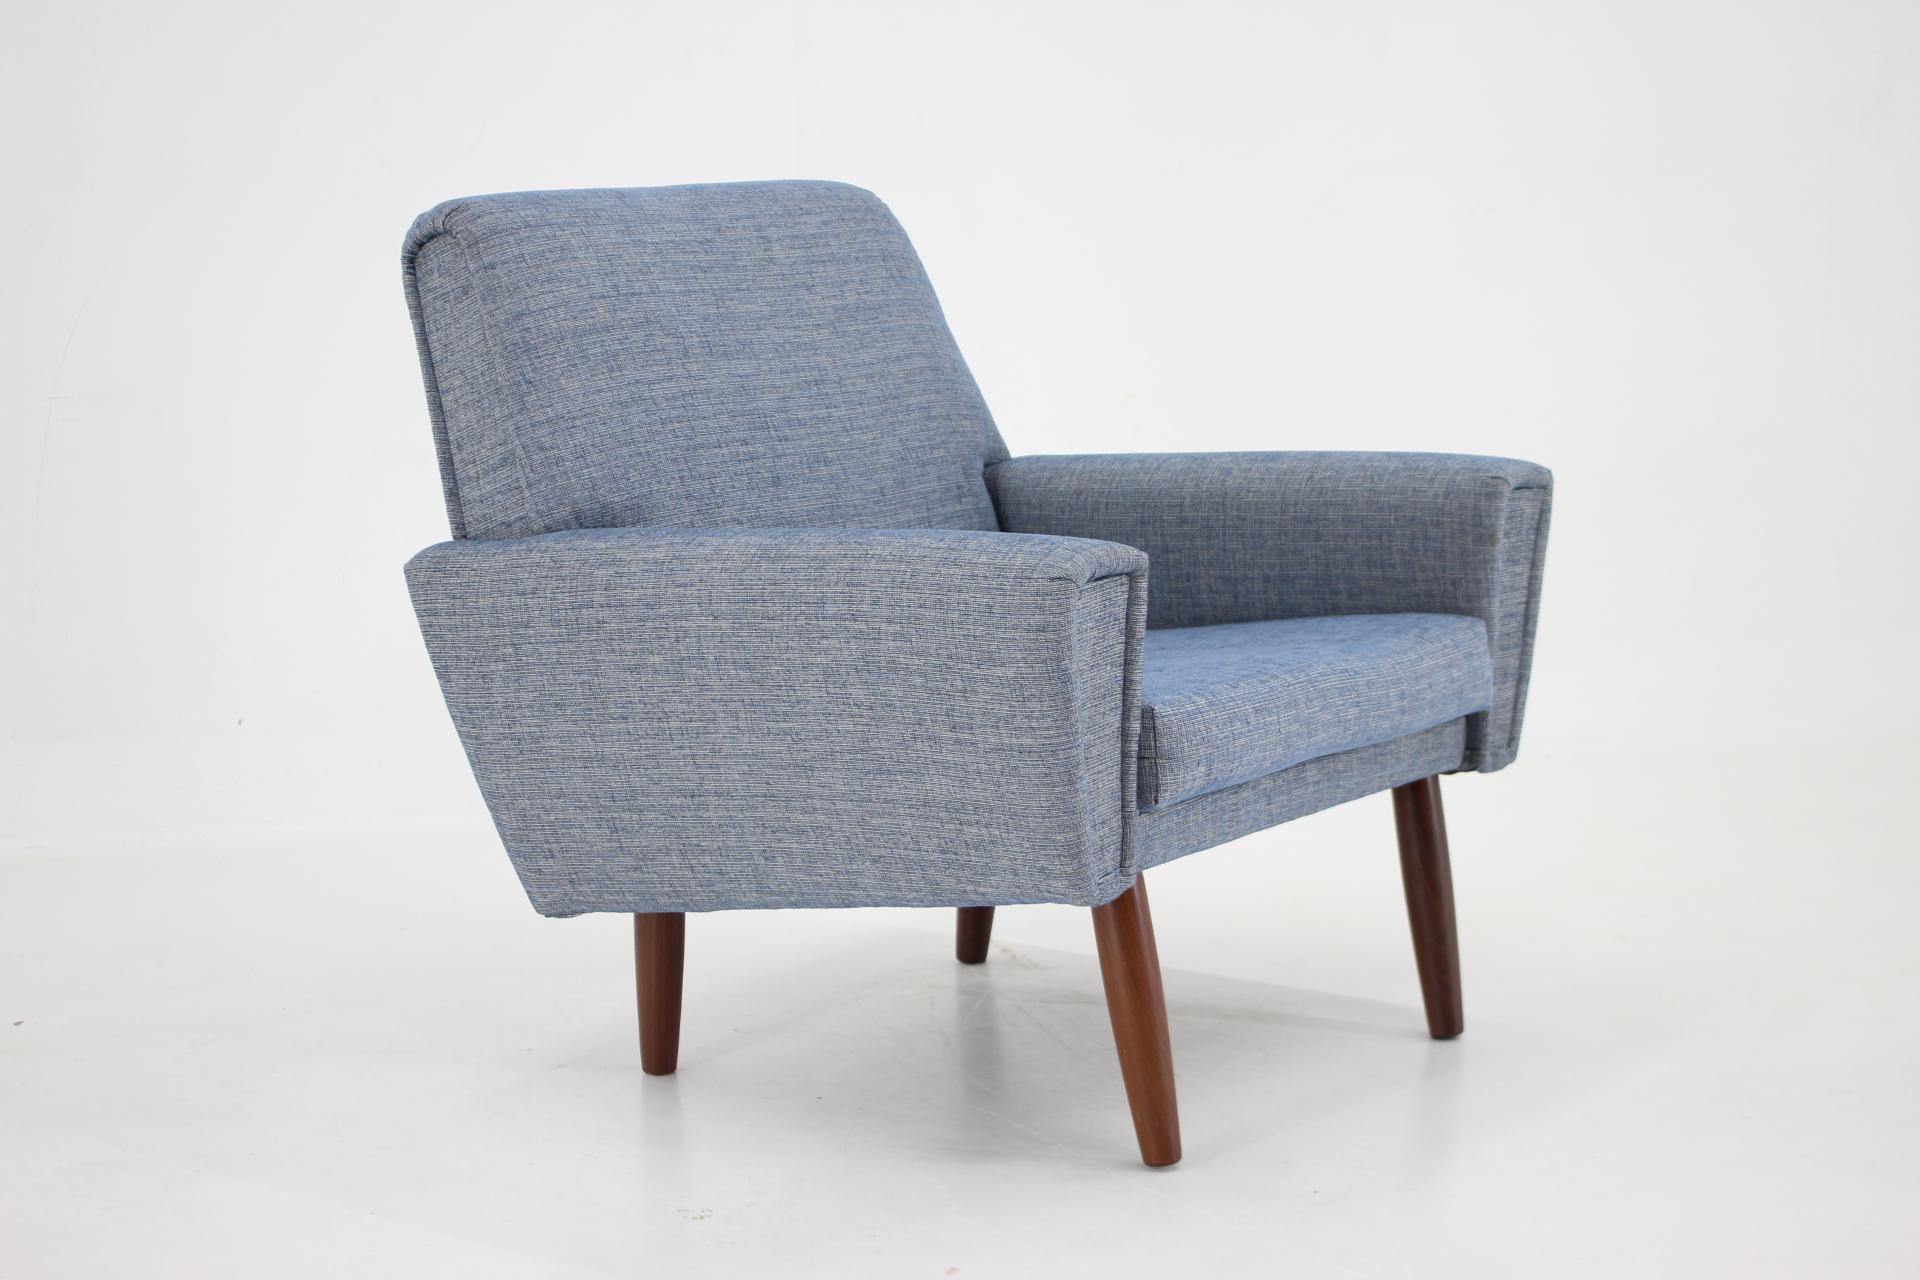 - fauteuil en teck danois des années 1960
- Nouvellement tapissé 